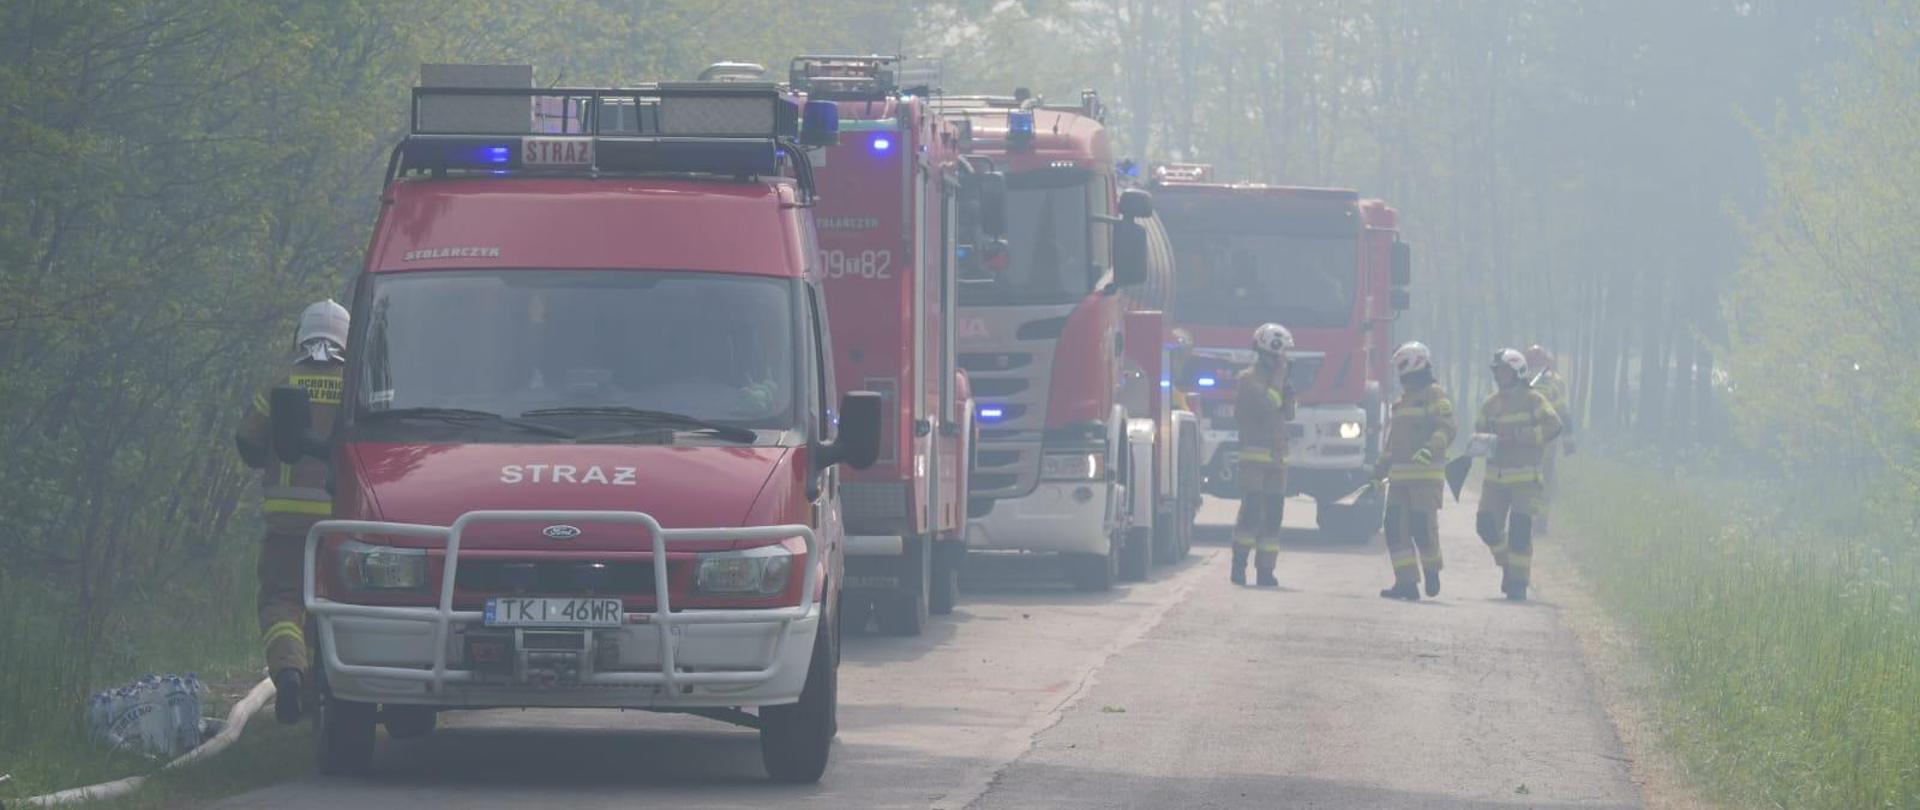 Samochody straży pożarnej i strażacy na drodze leśnej podczas działań gaśniczych w lesie